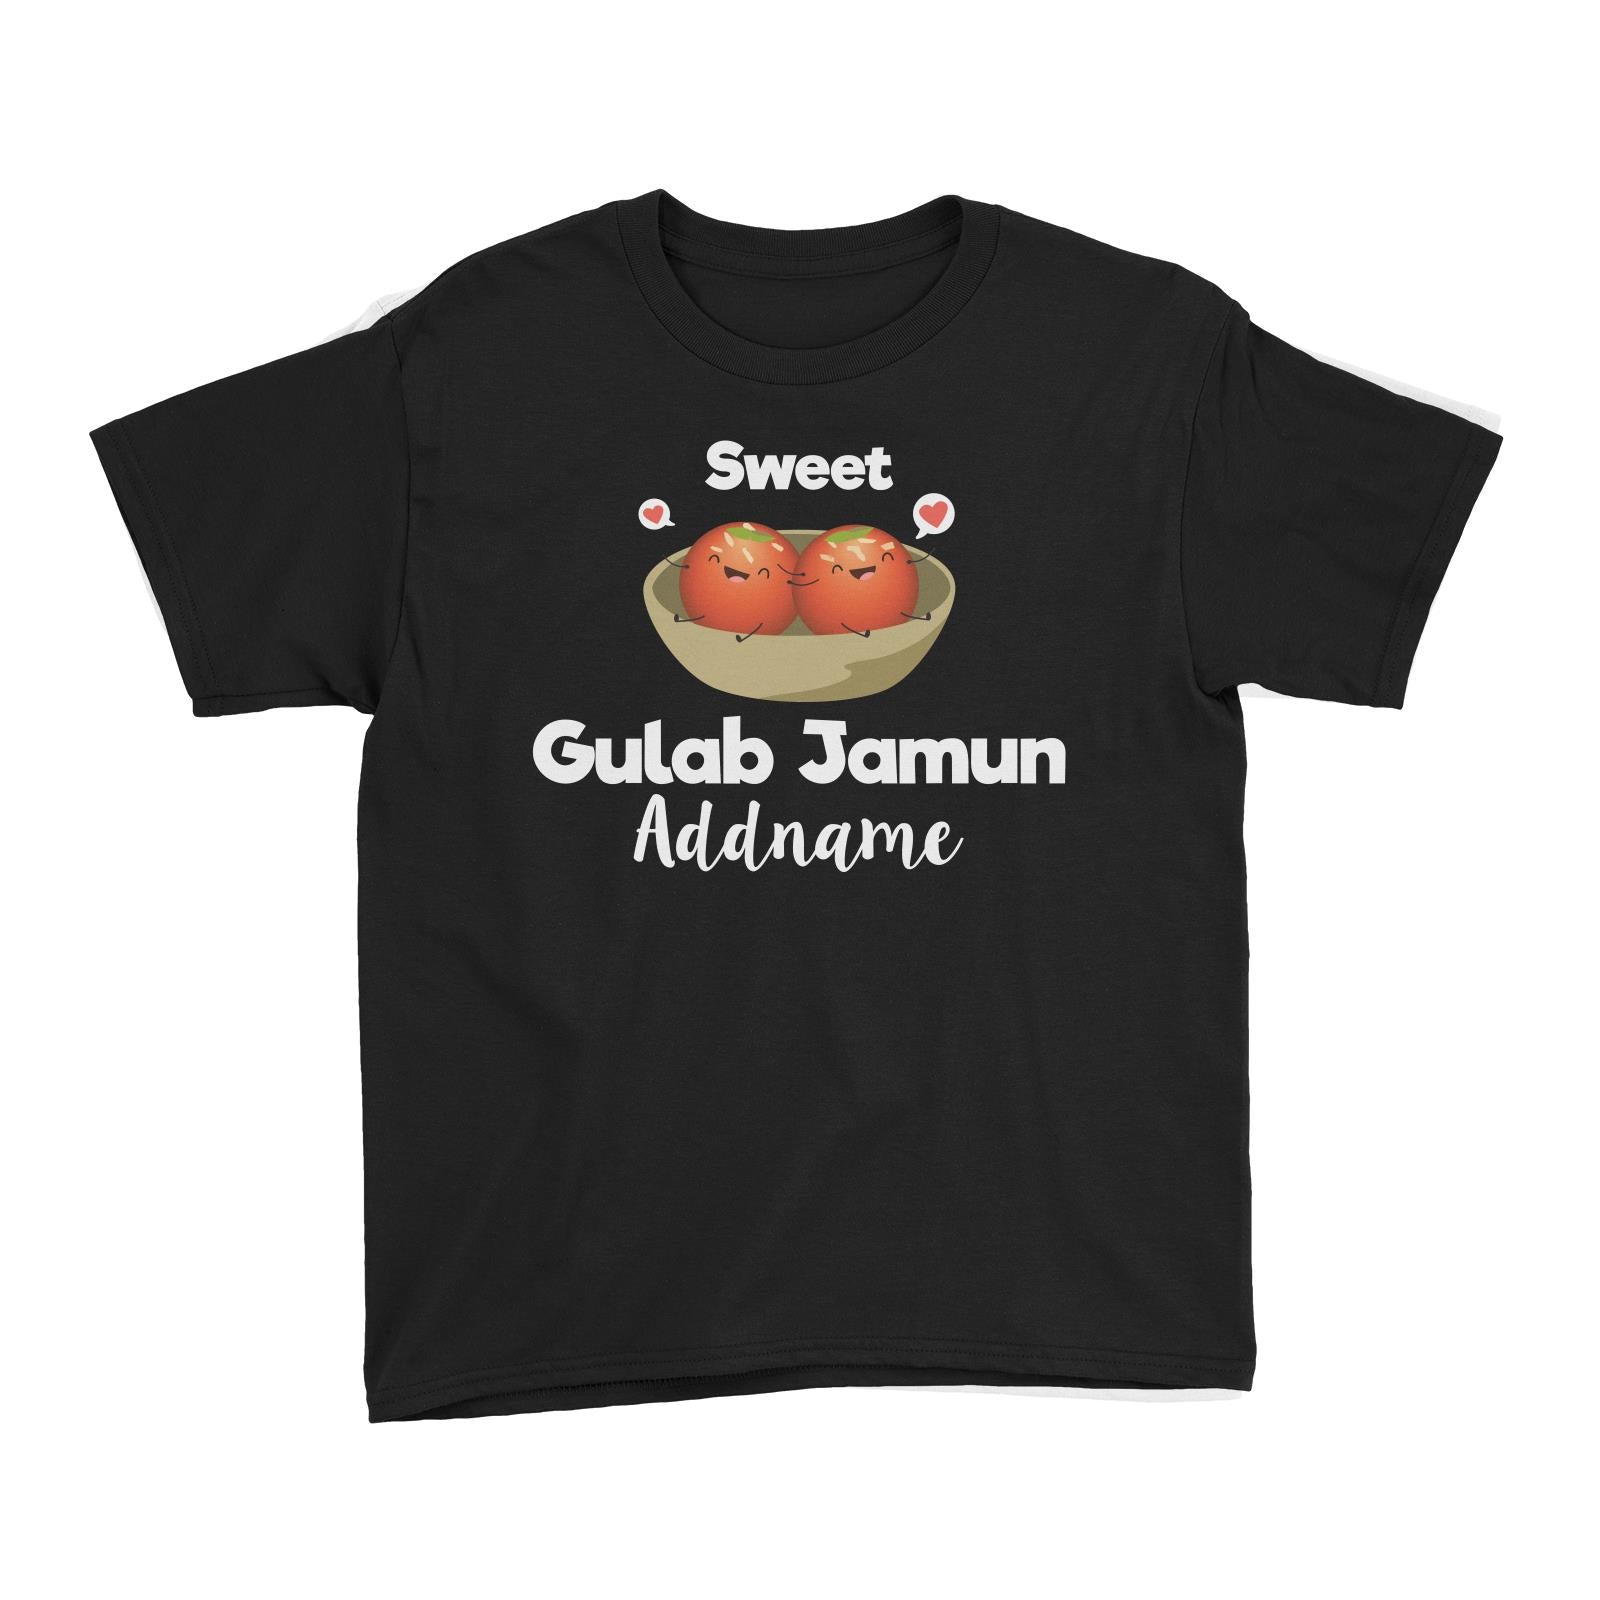 Sweet Gulab Jamun Addname Kid's T-Shirt